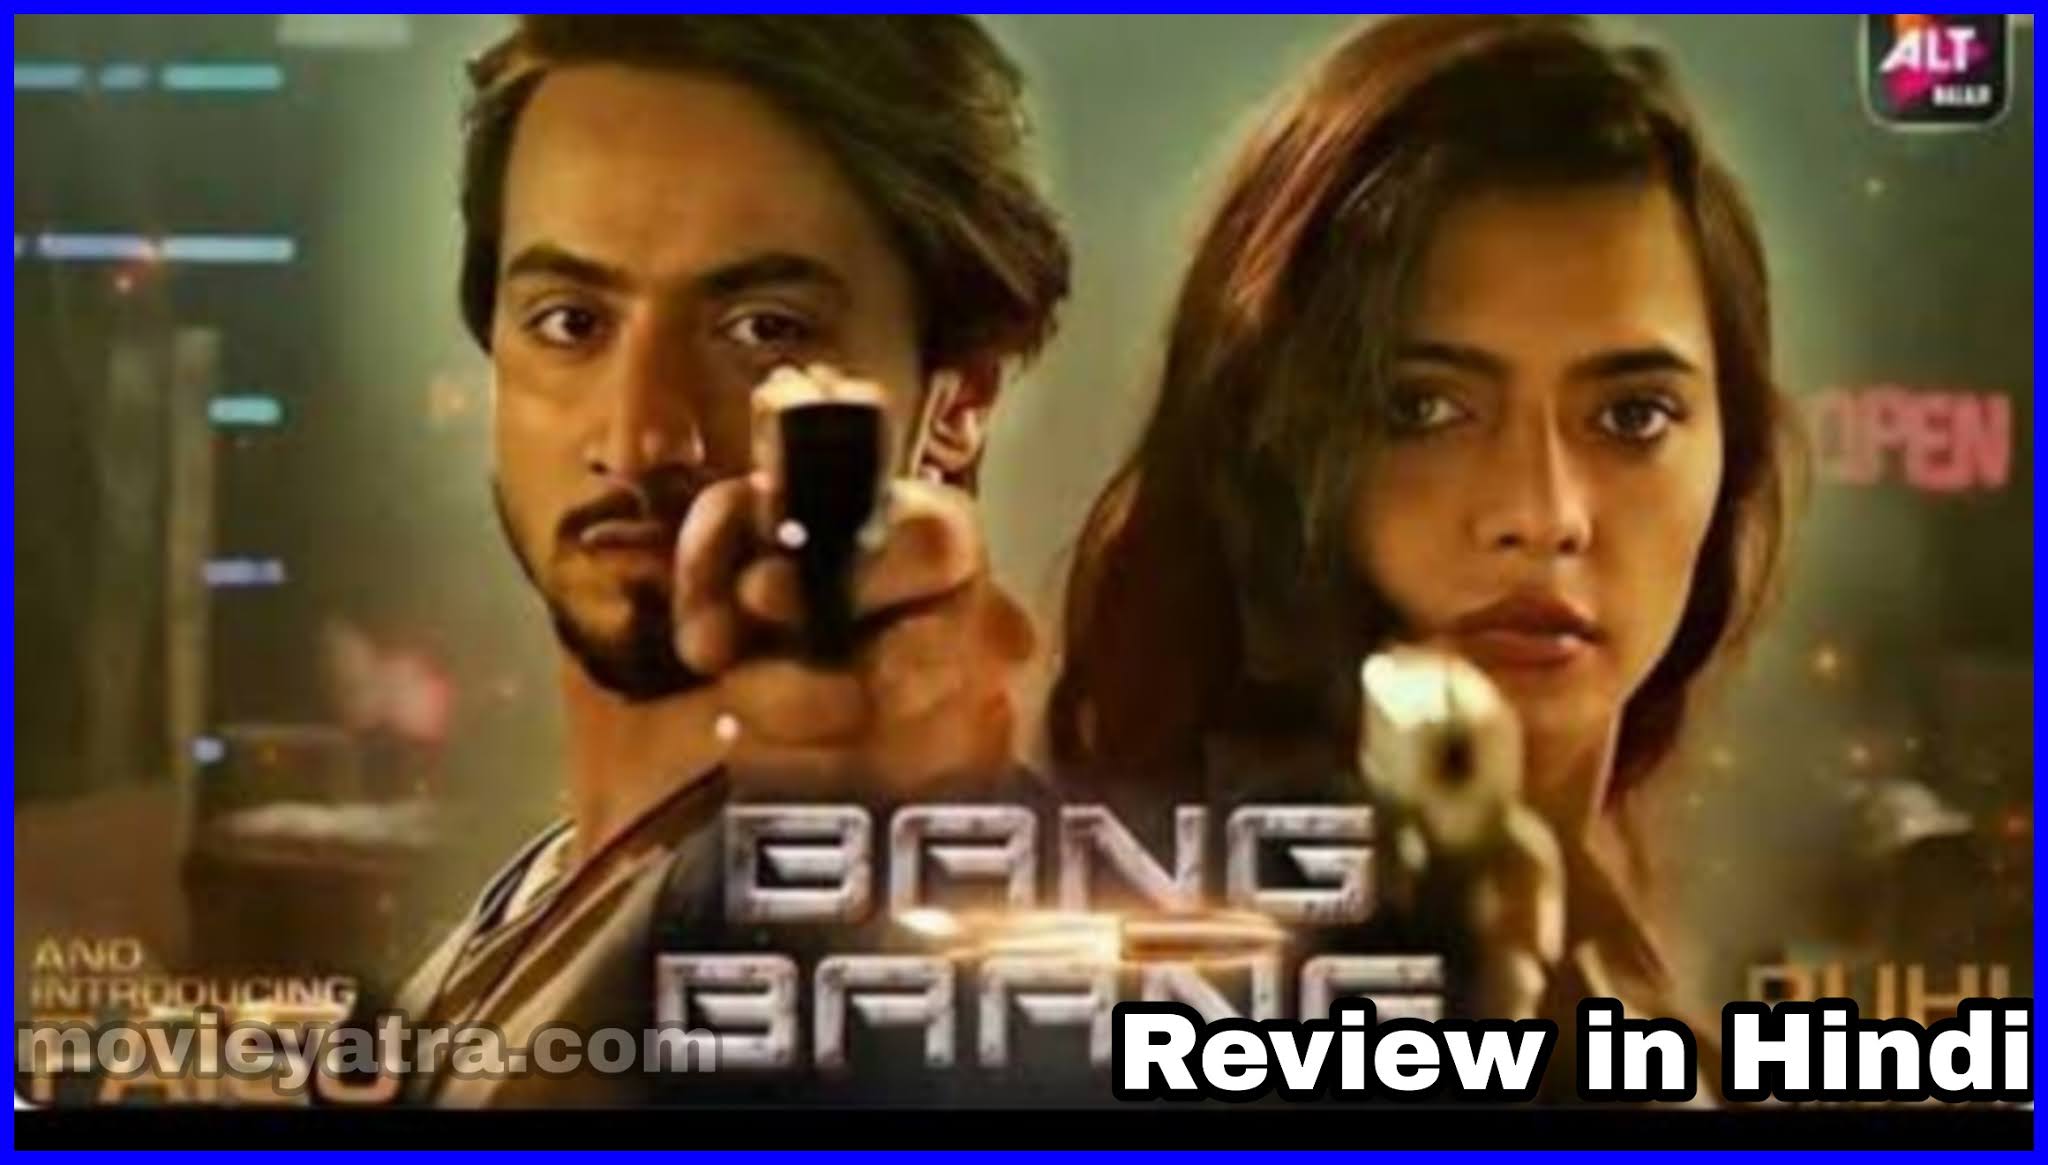 Bang Baang Download full episodes and Review, Bang Baang Web Series review in Hindi language